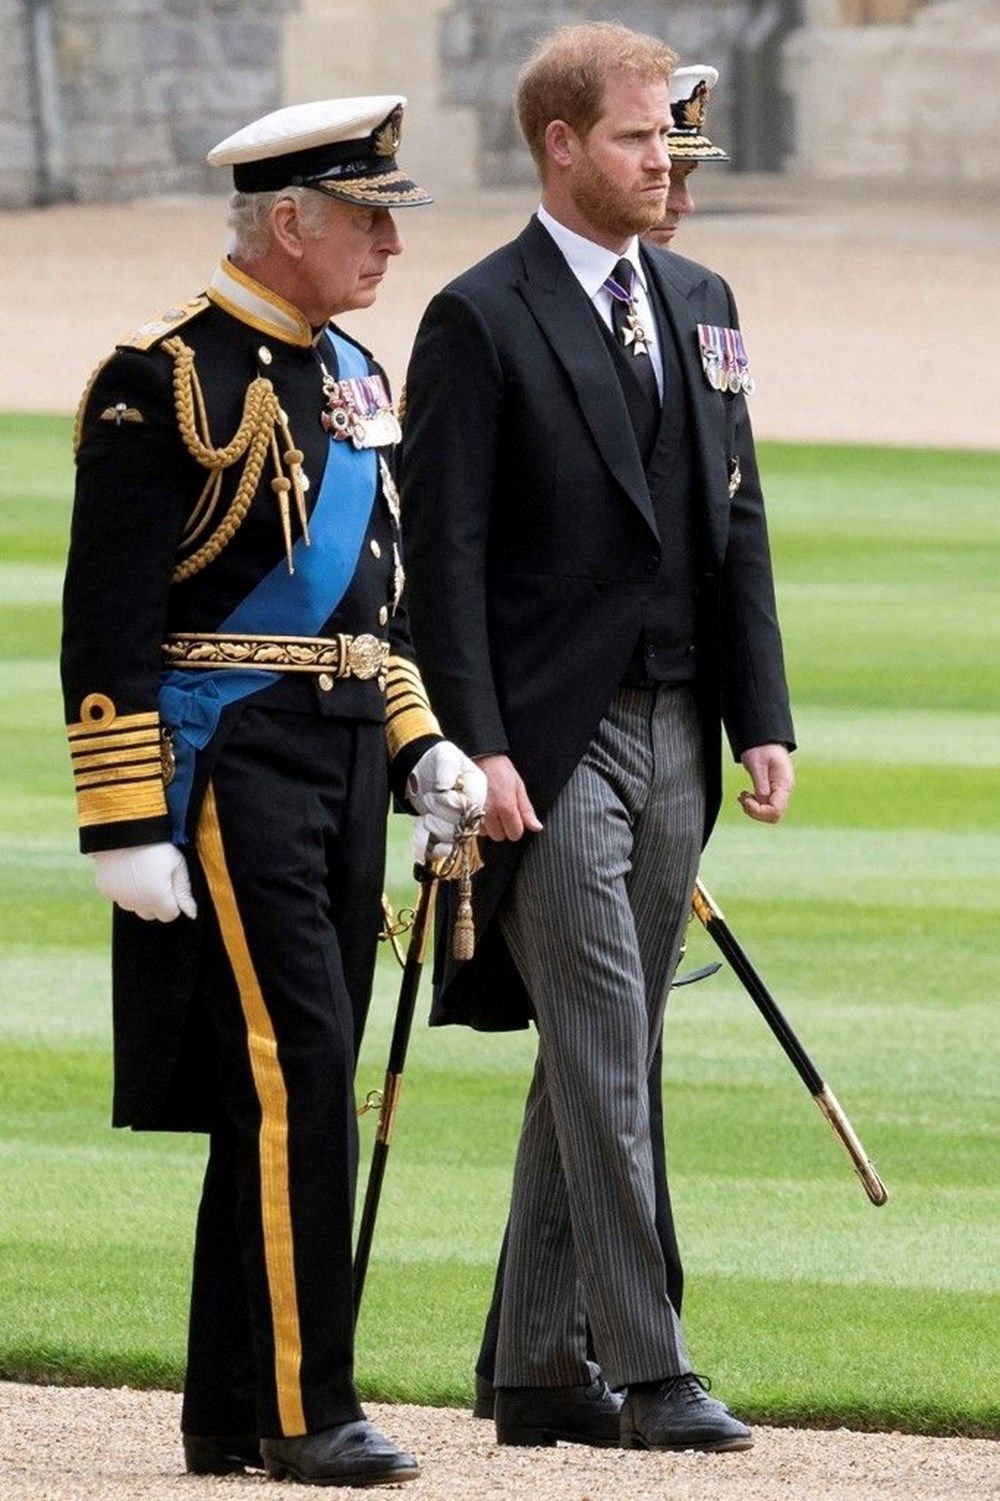 Kral Charles taç giyme töreninde geleneği bozacak - 5